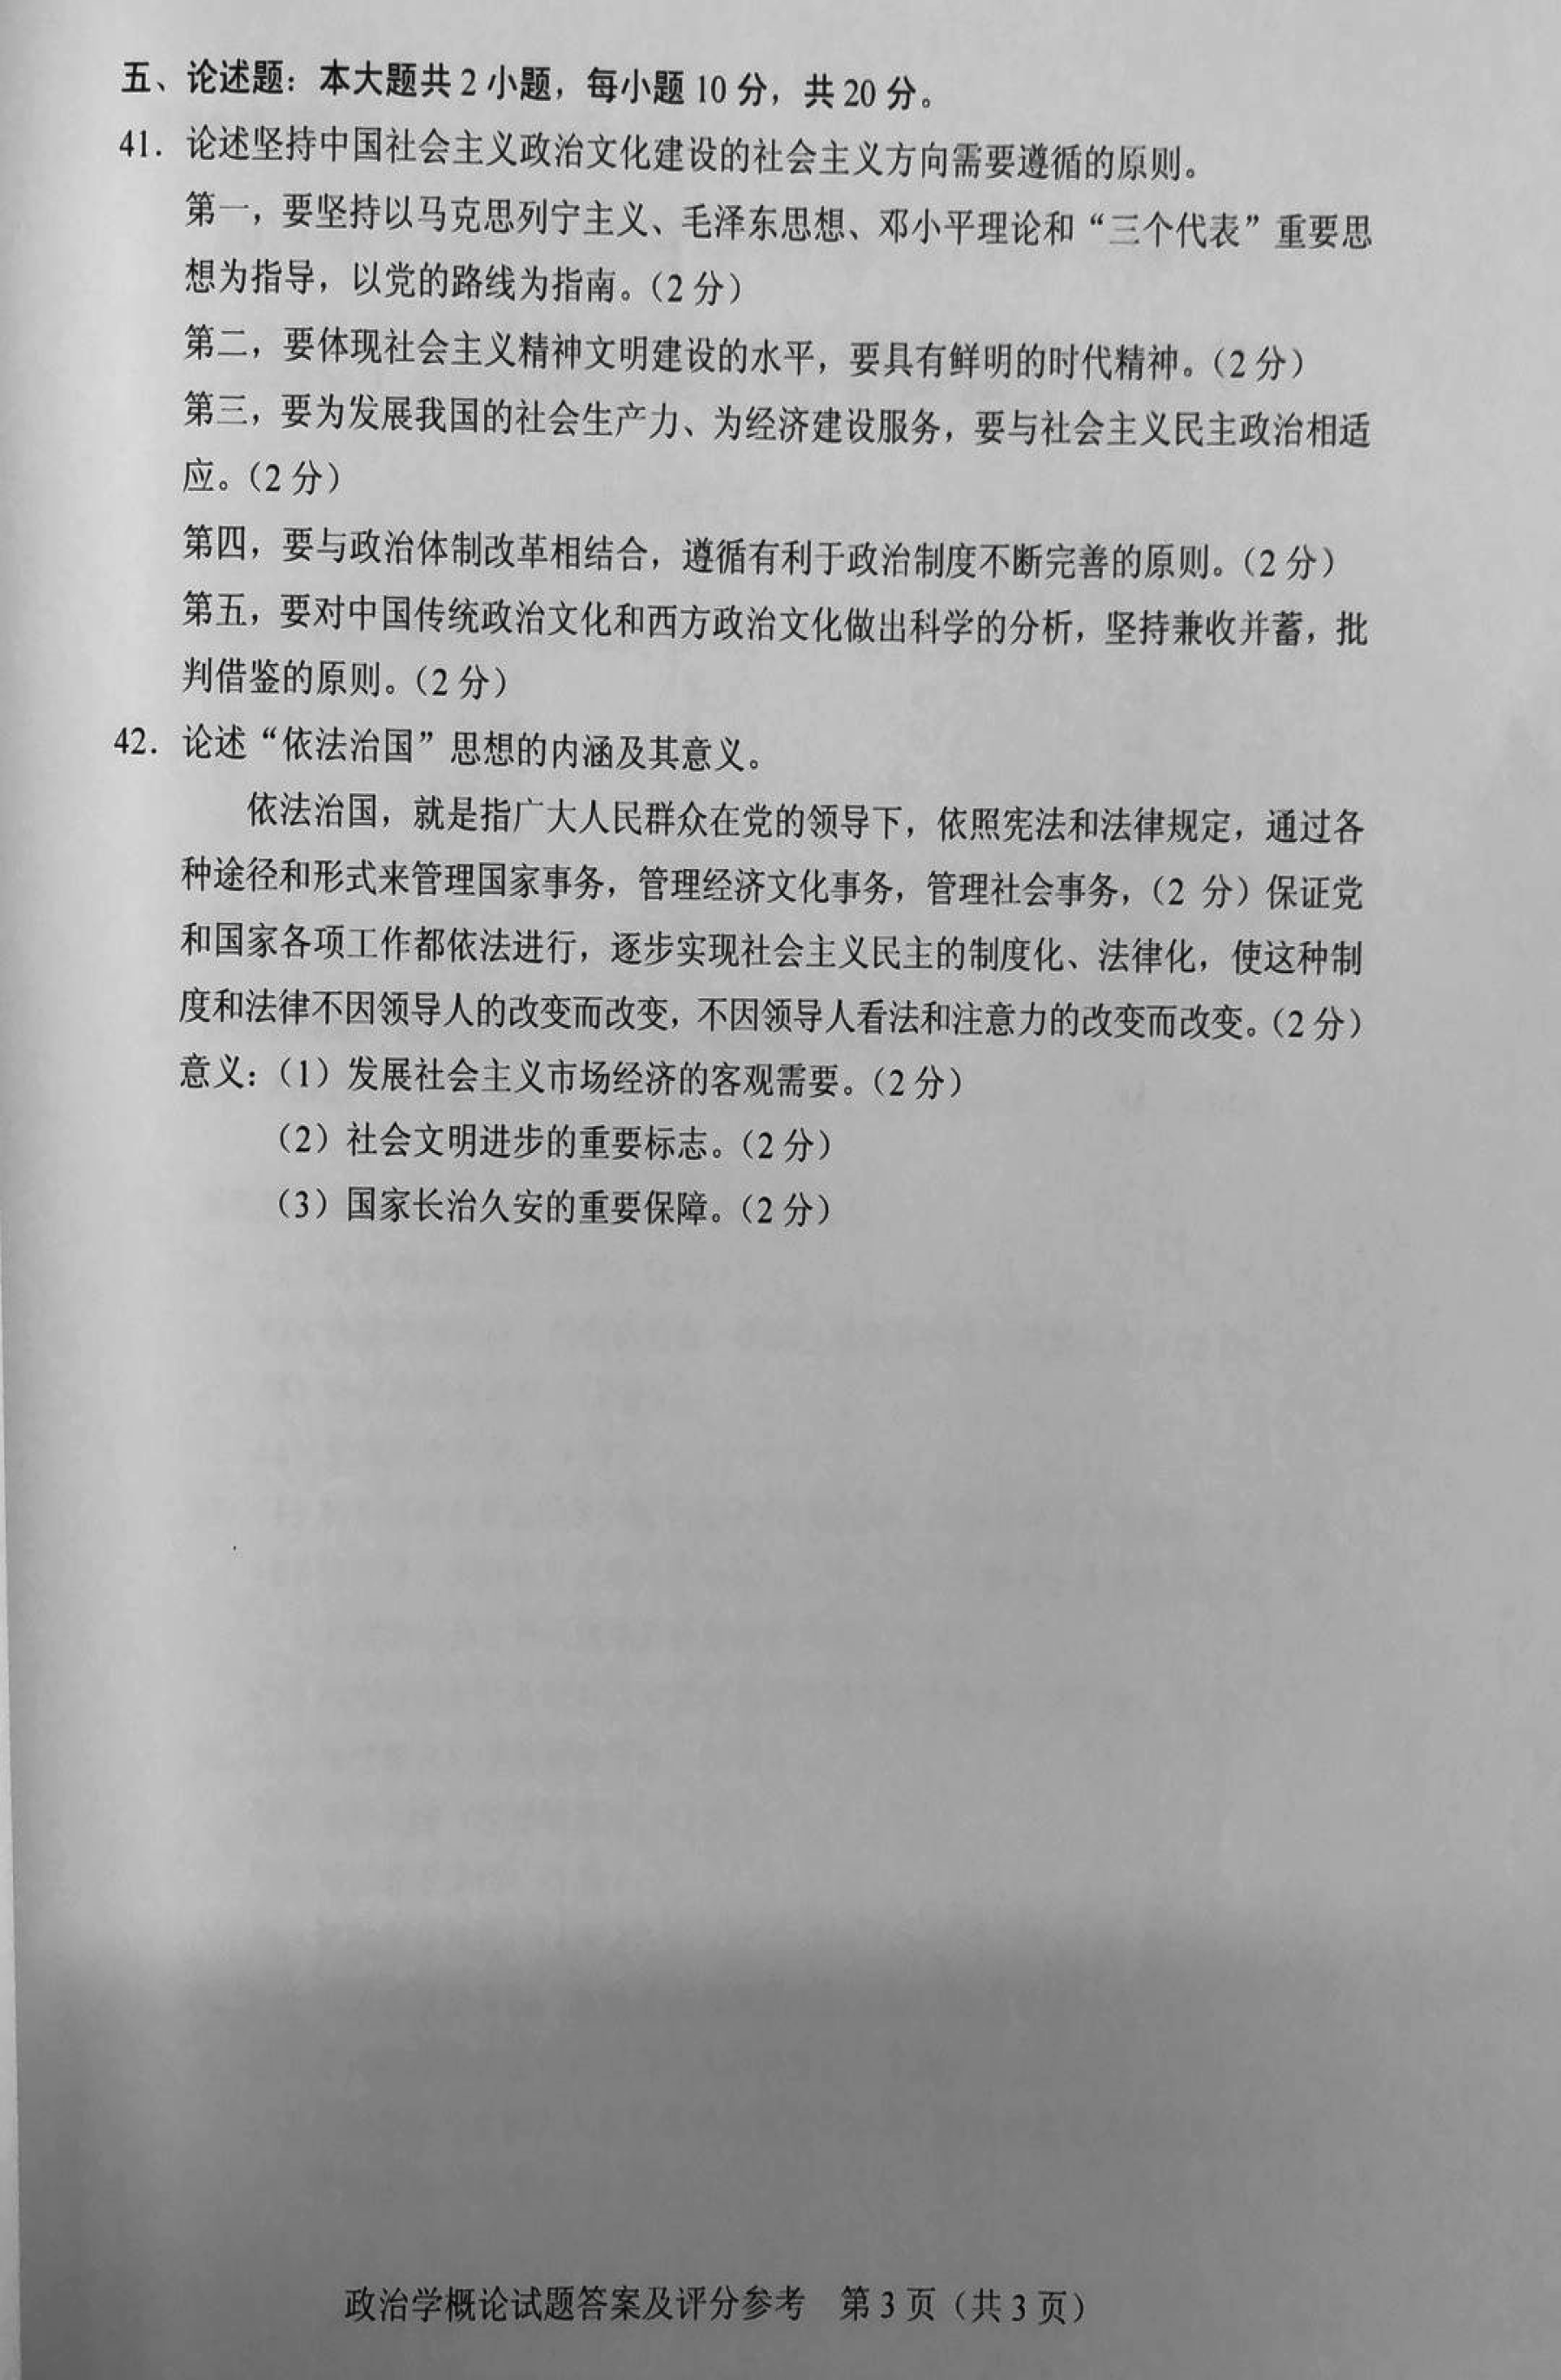 2019年10月贵州省自考00312政治学概论真题及答案